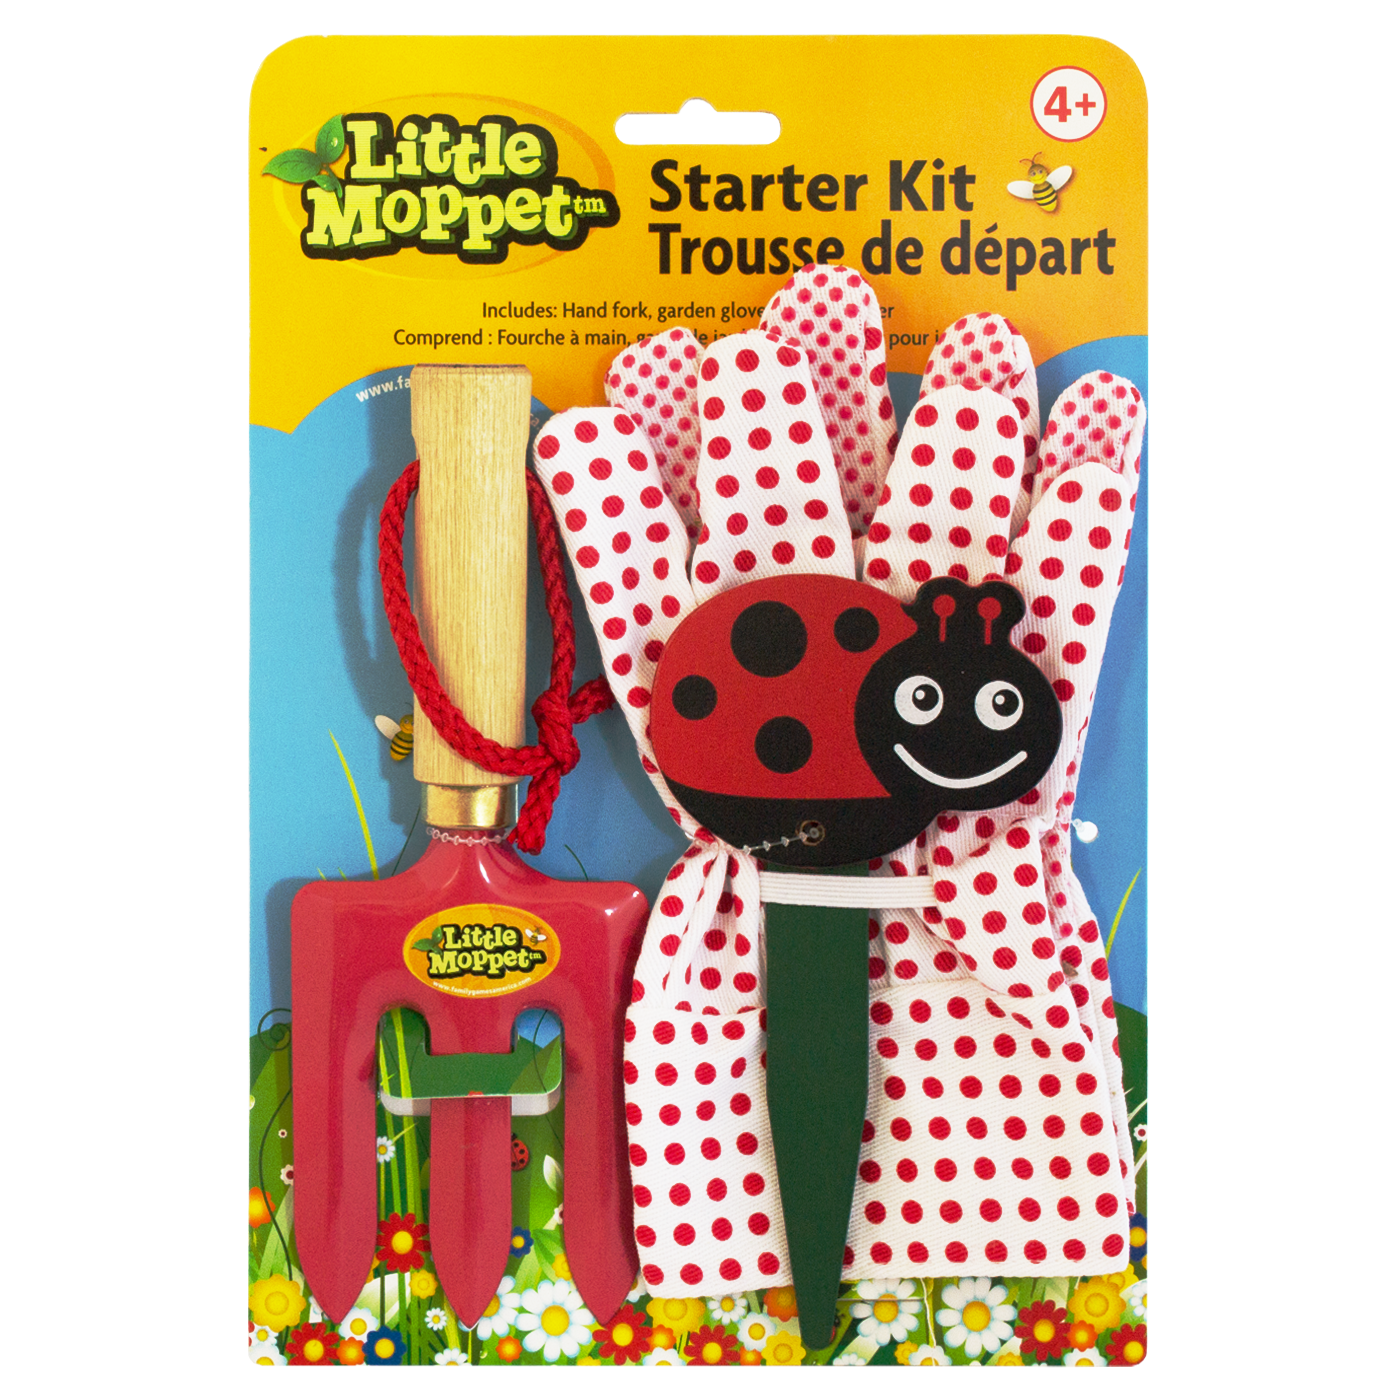 Little Moppet Gardening Starter Kit for Kids 4+